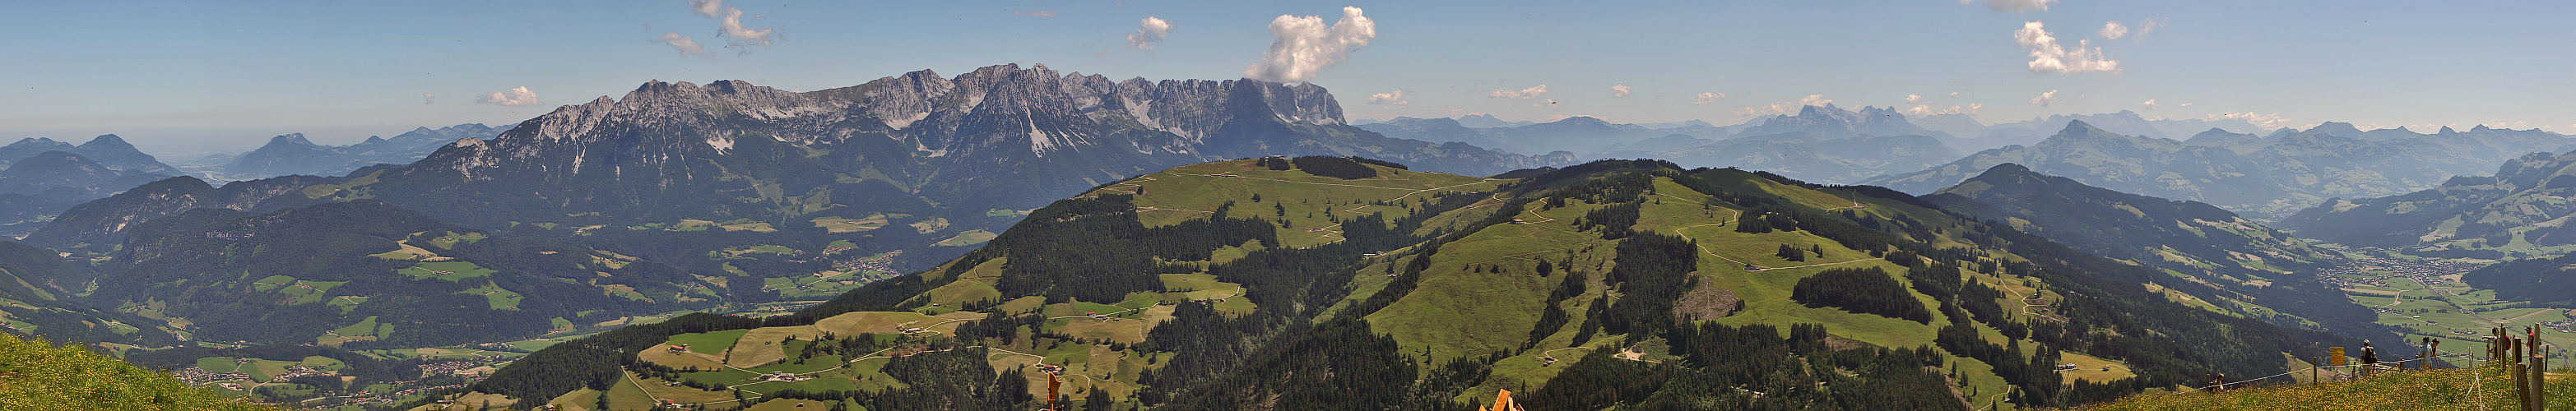 Panorama von der Hohen Salve zum Wilden Kaiser in Tirol